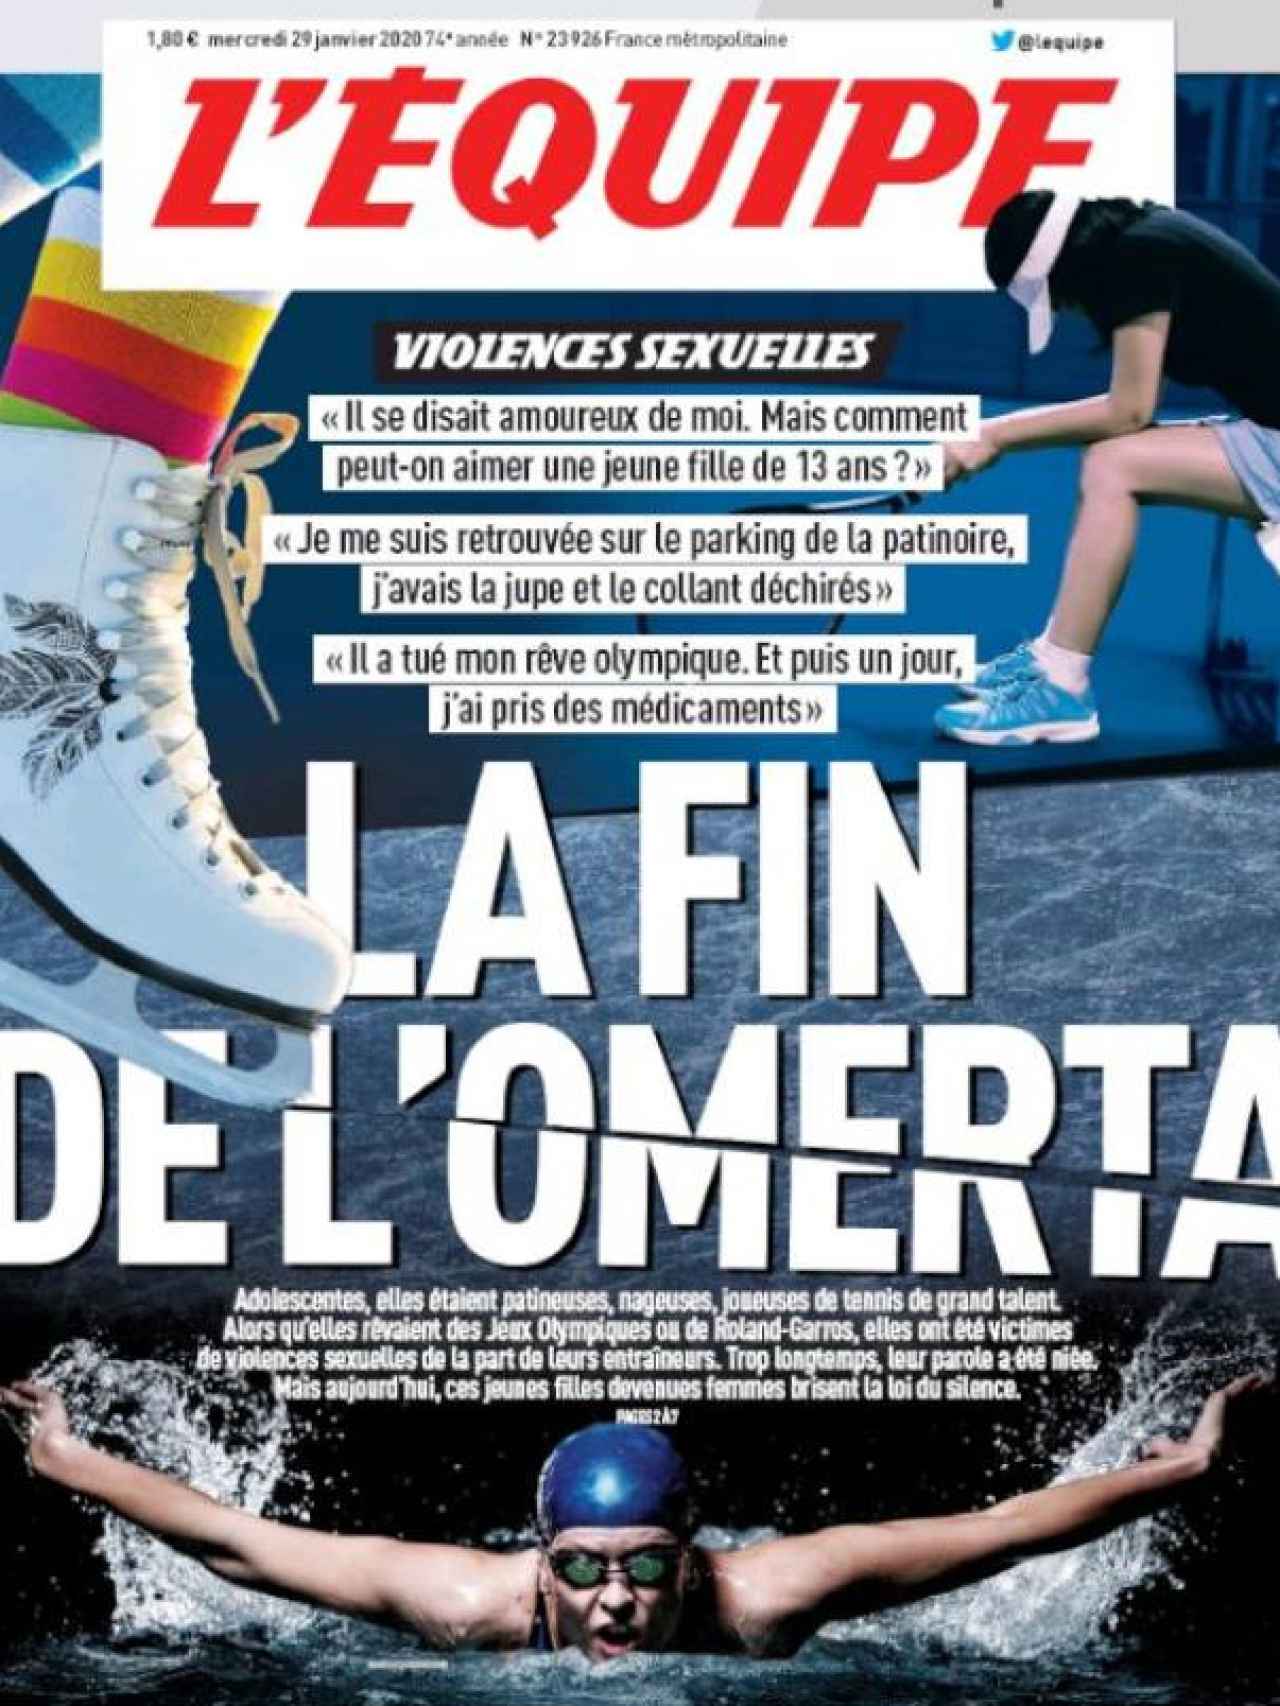 La portada de L'Equipe de este miércoles 29 de enero de 2020